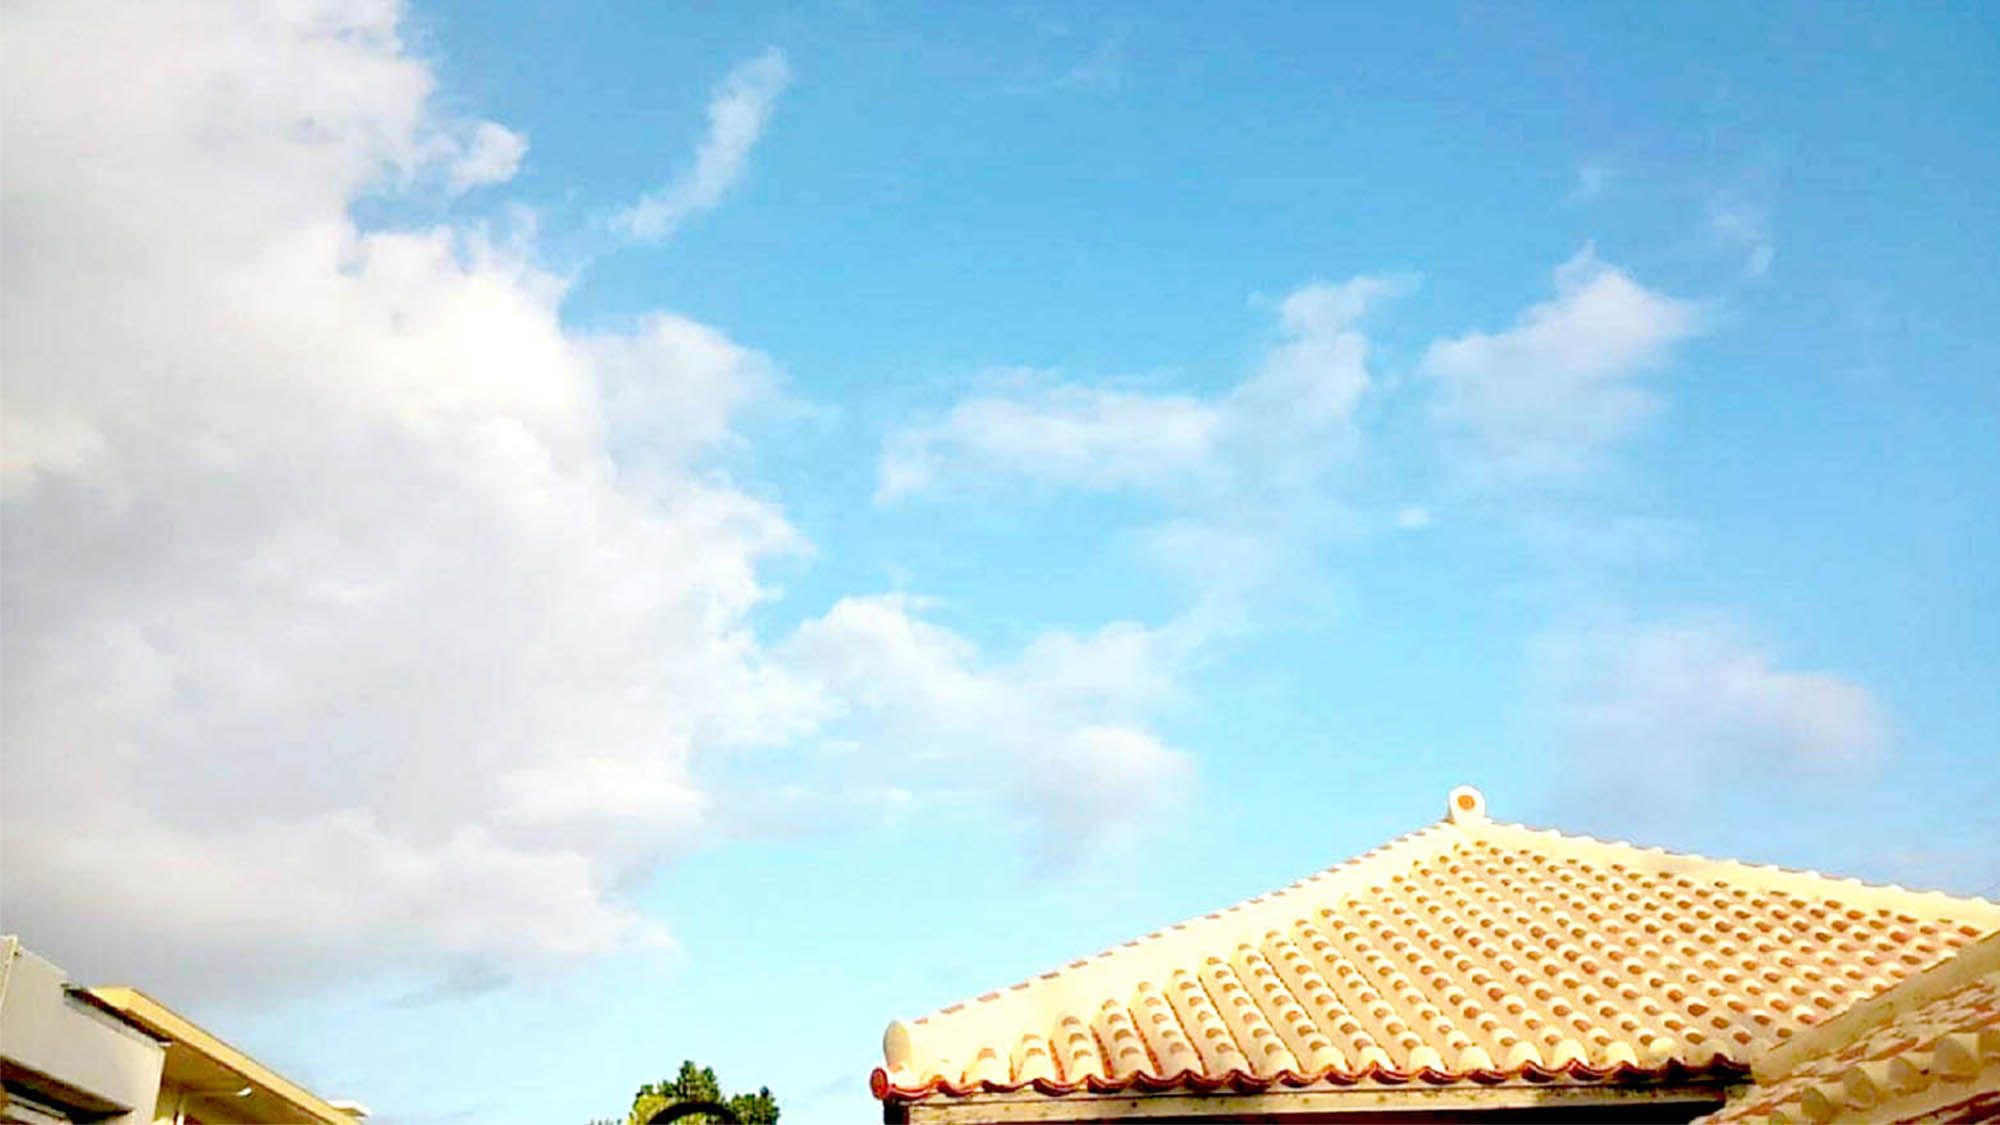 ・青い空に映える沖縄らしい昔ながらの赤瓦屋根